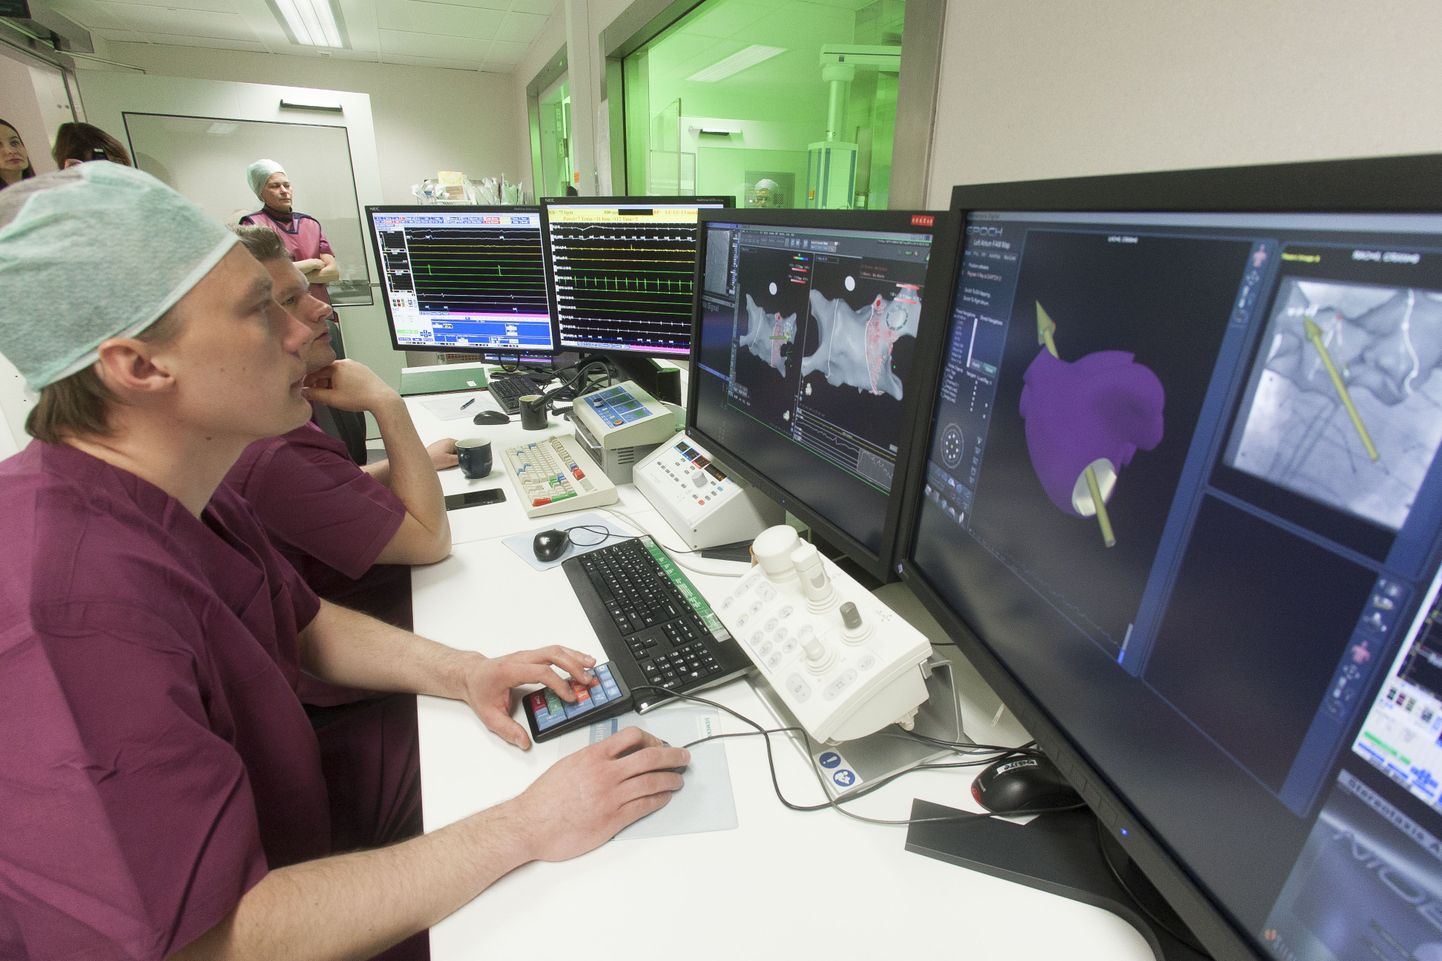 Põhja-Eesti regionaalhaigla kardioloogiakeskuse invasiivkardioloogia osakonna arst Priit Kampus juhib kateeterablatsiooni protseduuri arvuti tagant. Patsient asub kõrvalruumis klaasseina taga.